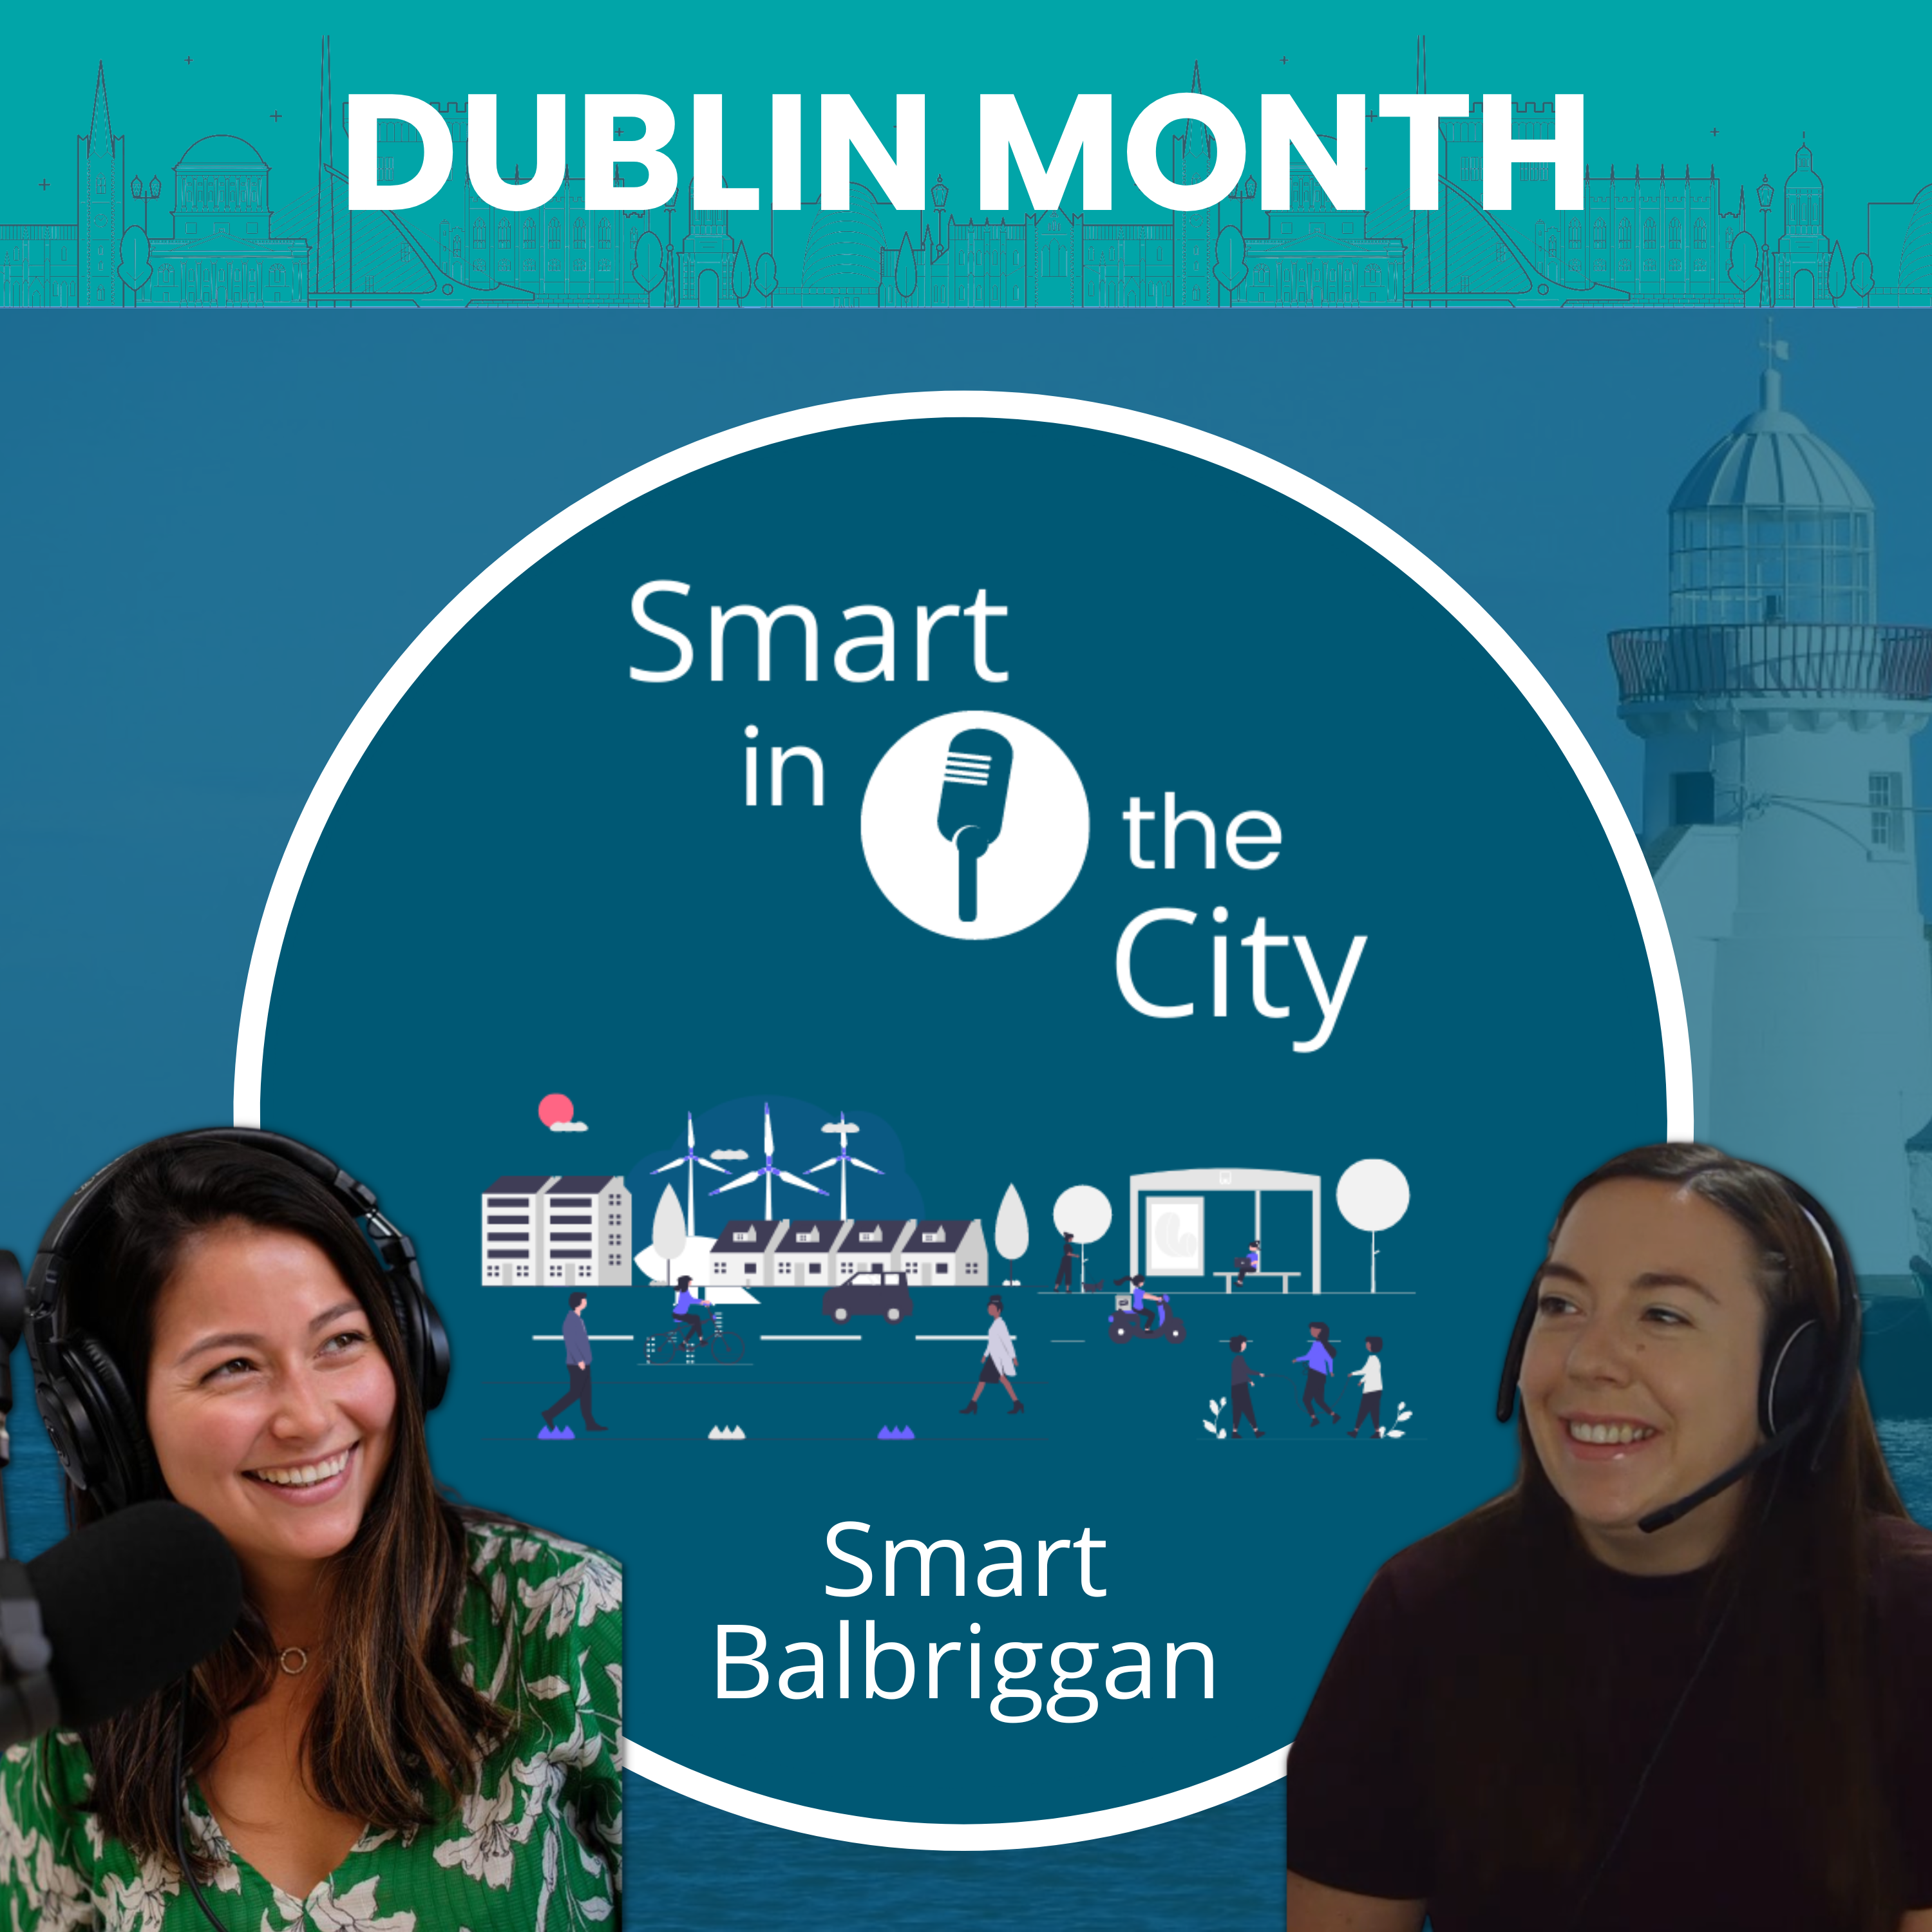 Dublin Month #6 - Smart Balbriggan: 